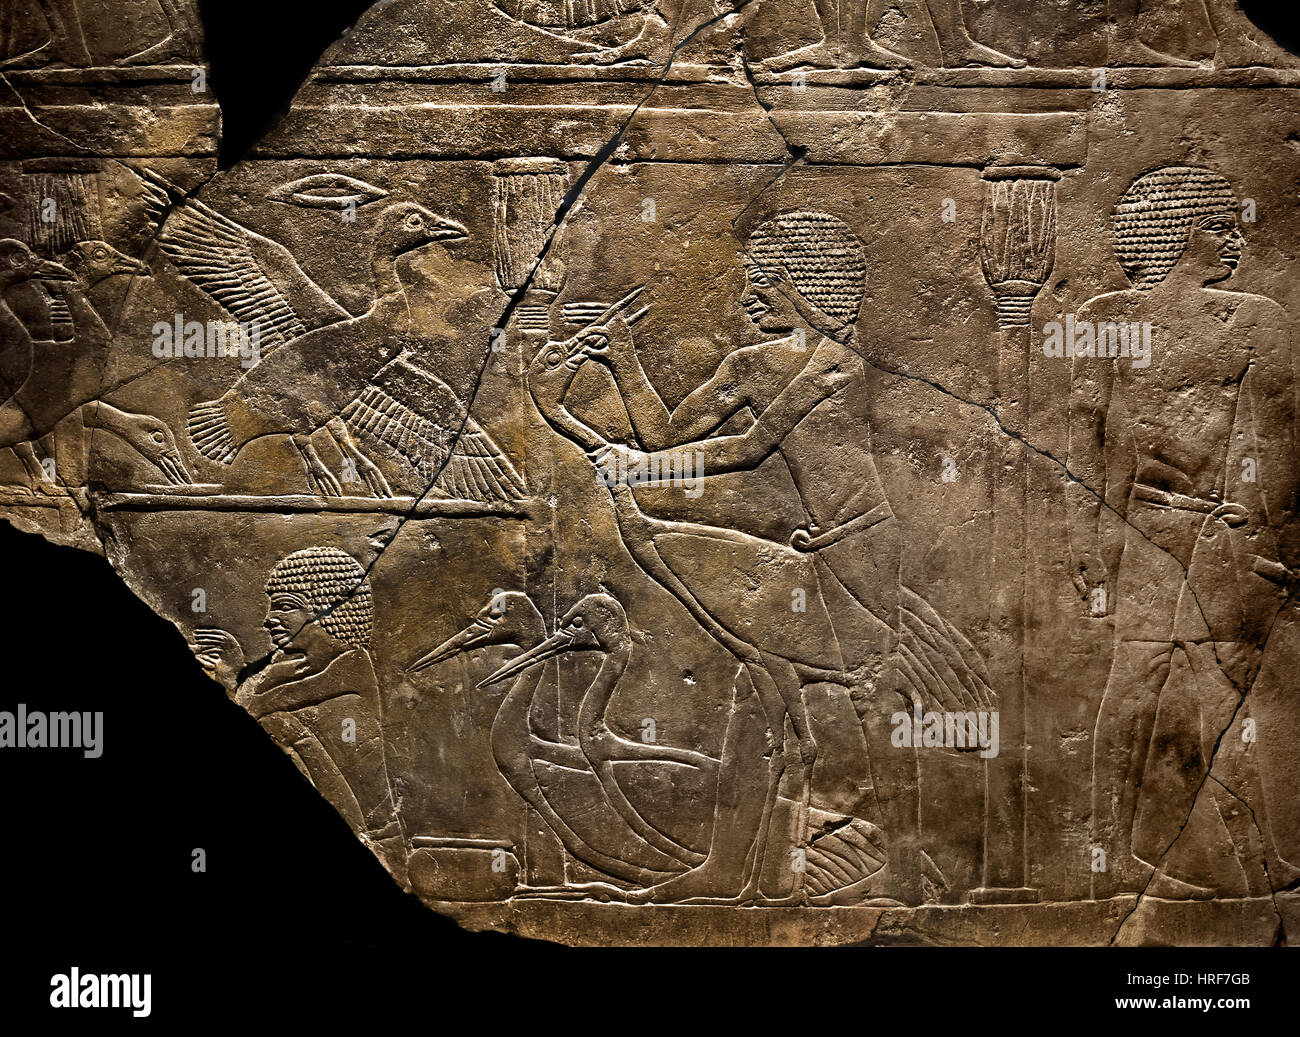 Alimentation de secours tombe de grues Vieux Royaume Ve dynastie égyptienne Egypte Saqqara 2500-2350 av. Banque D'Images